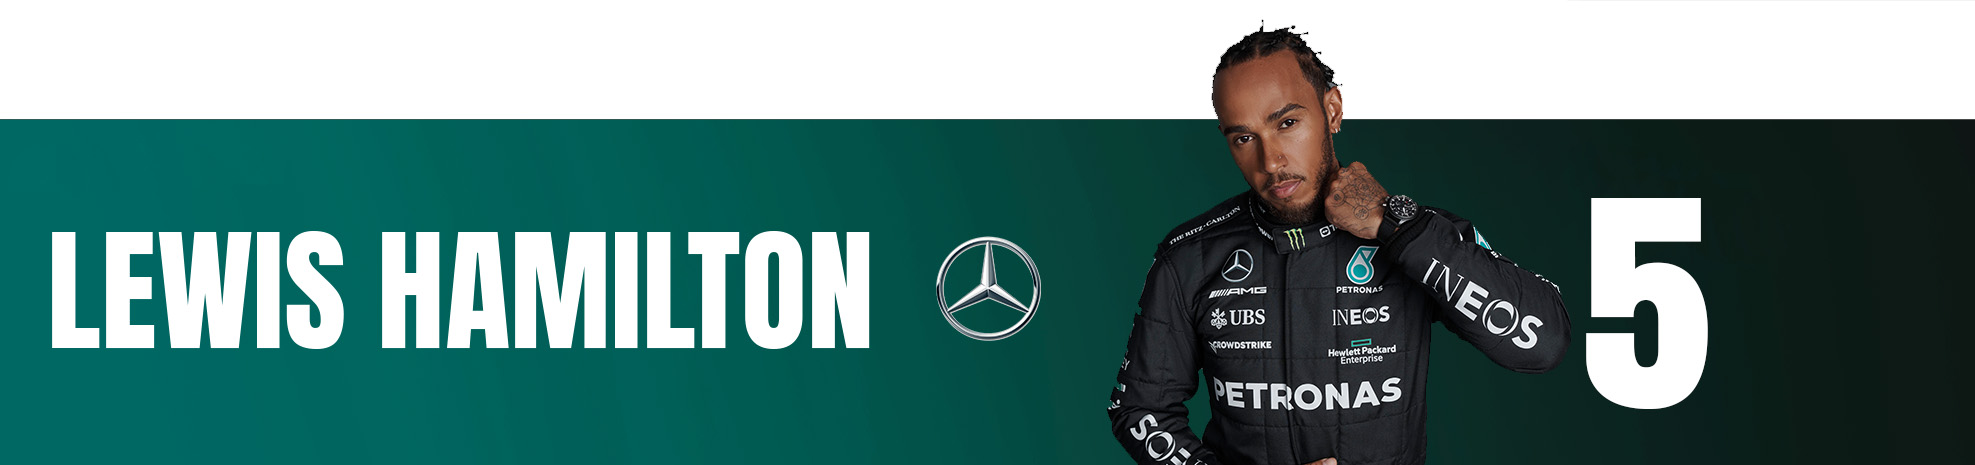 Miami GP F1 rankings Lewis Hamilton